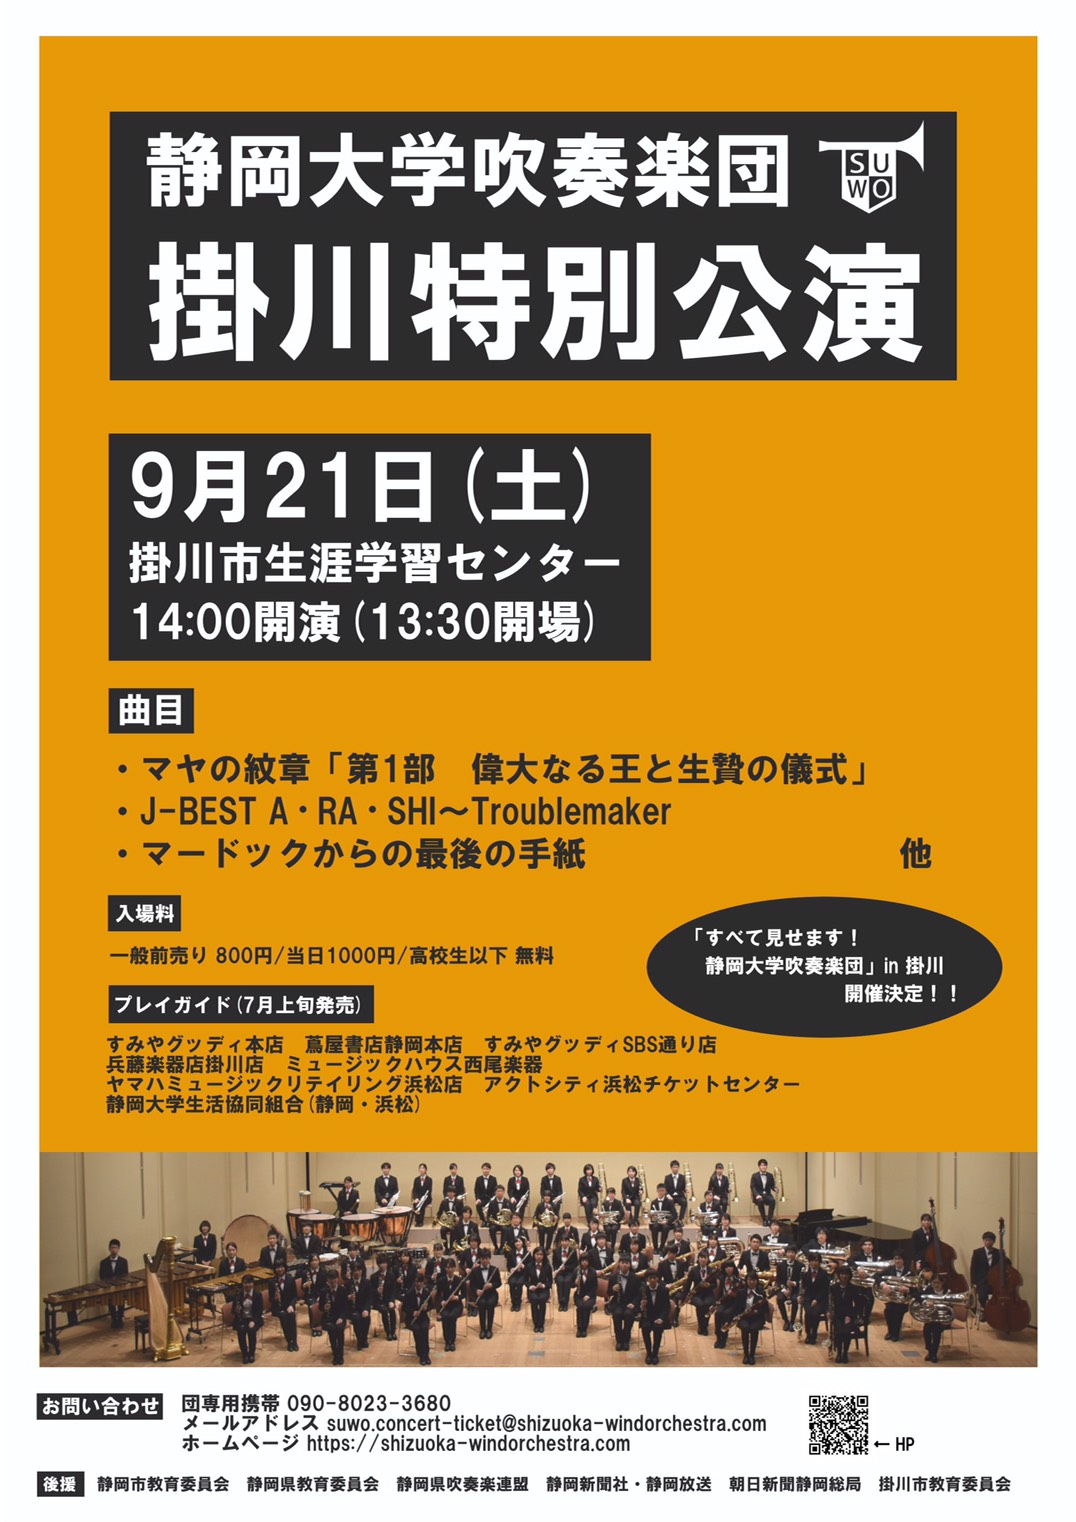 静岡大学吹奏楽団